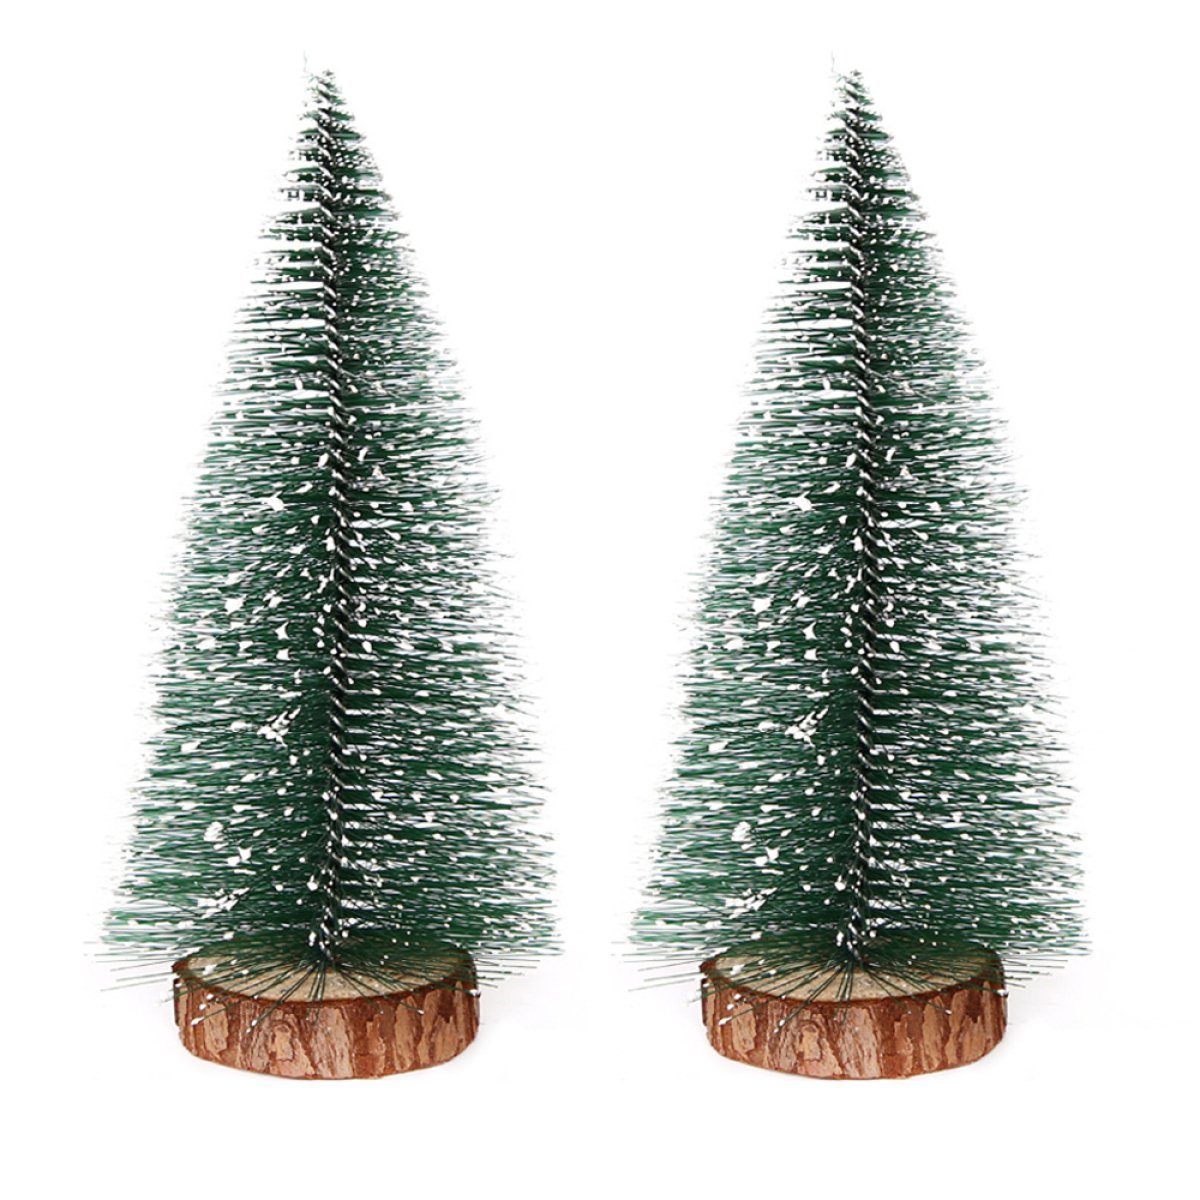 Zeaicos Hänge-Weihnachtsbaum Mini-Weihnachtsbaum, kleiner Tannenbaum mit Holzsockel Baumdekoration